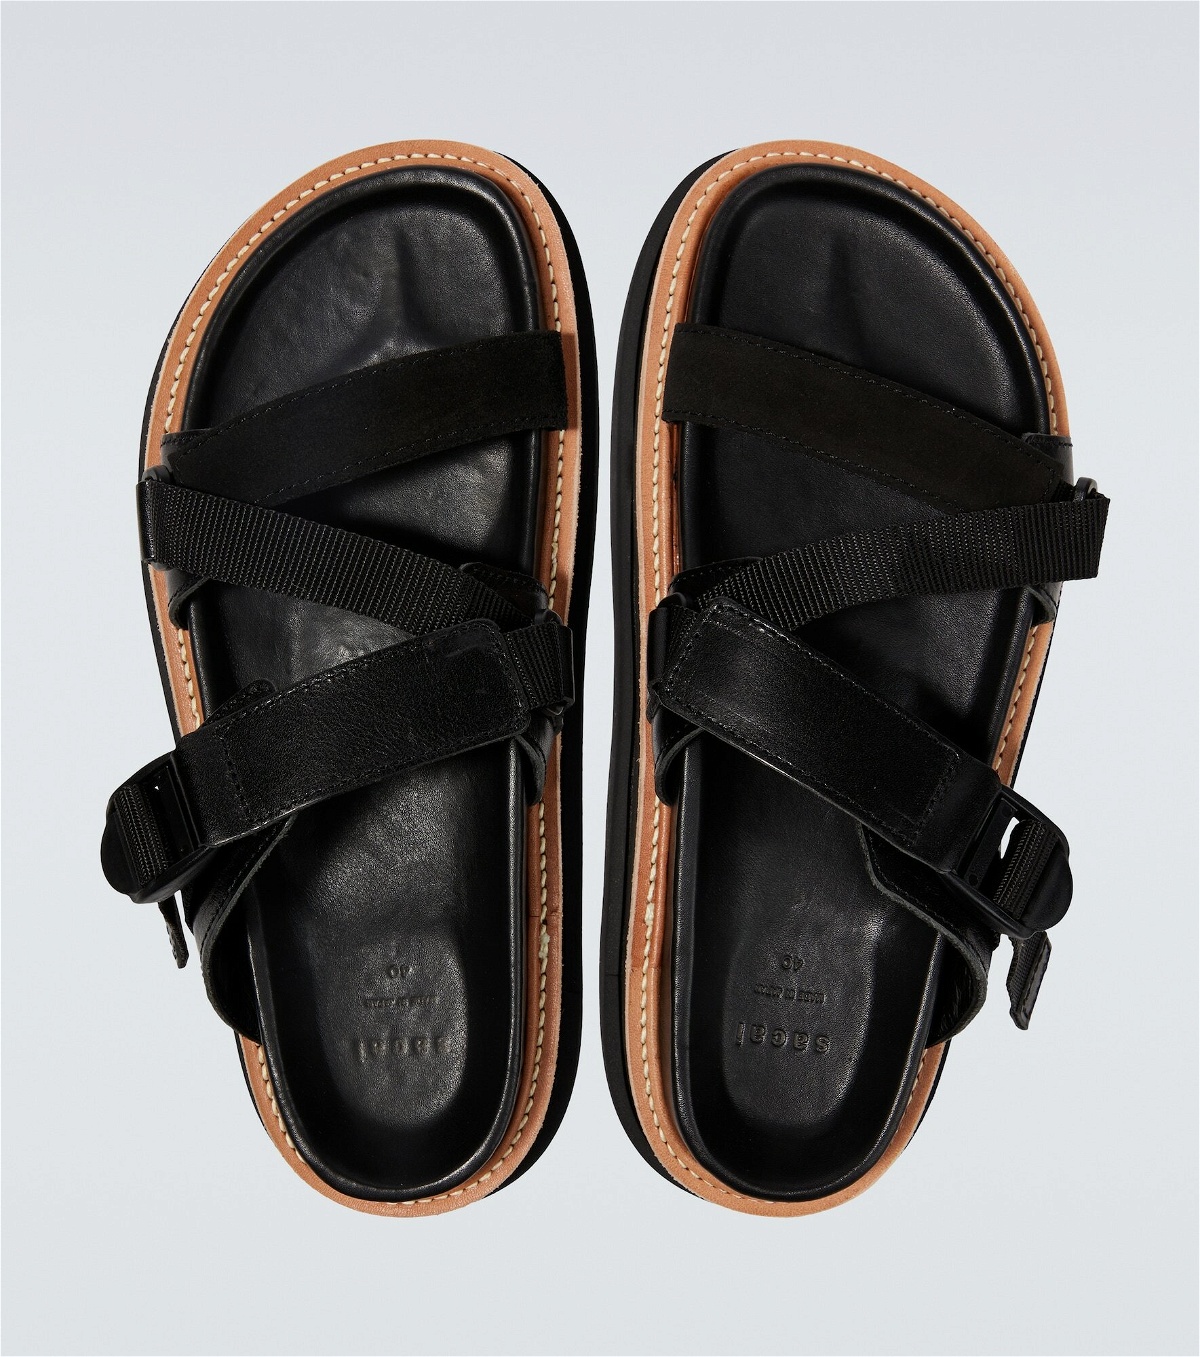 Sacai - Hybrid Belt leather platform sandals Sacai